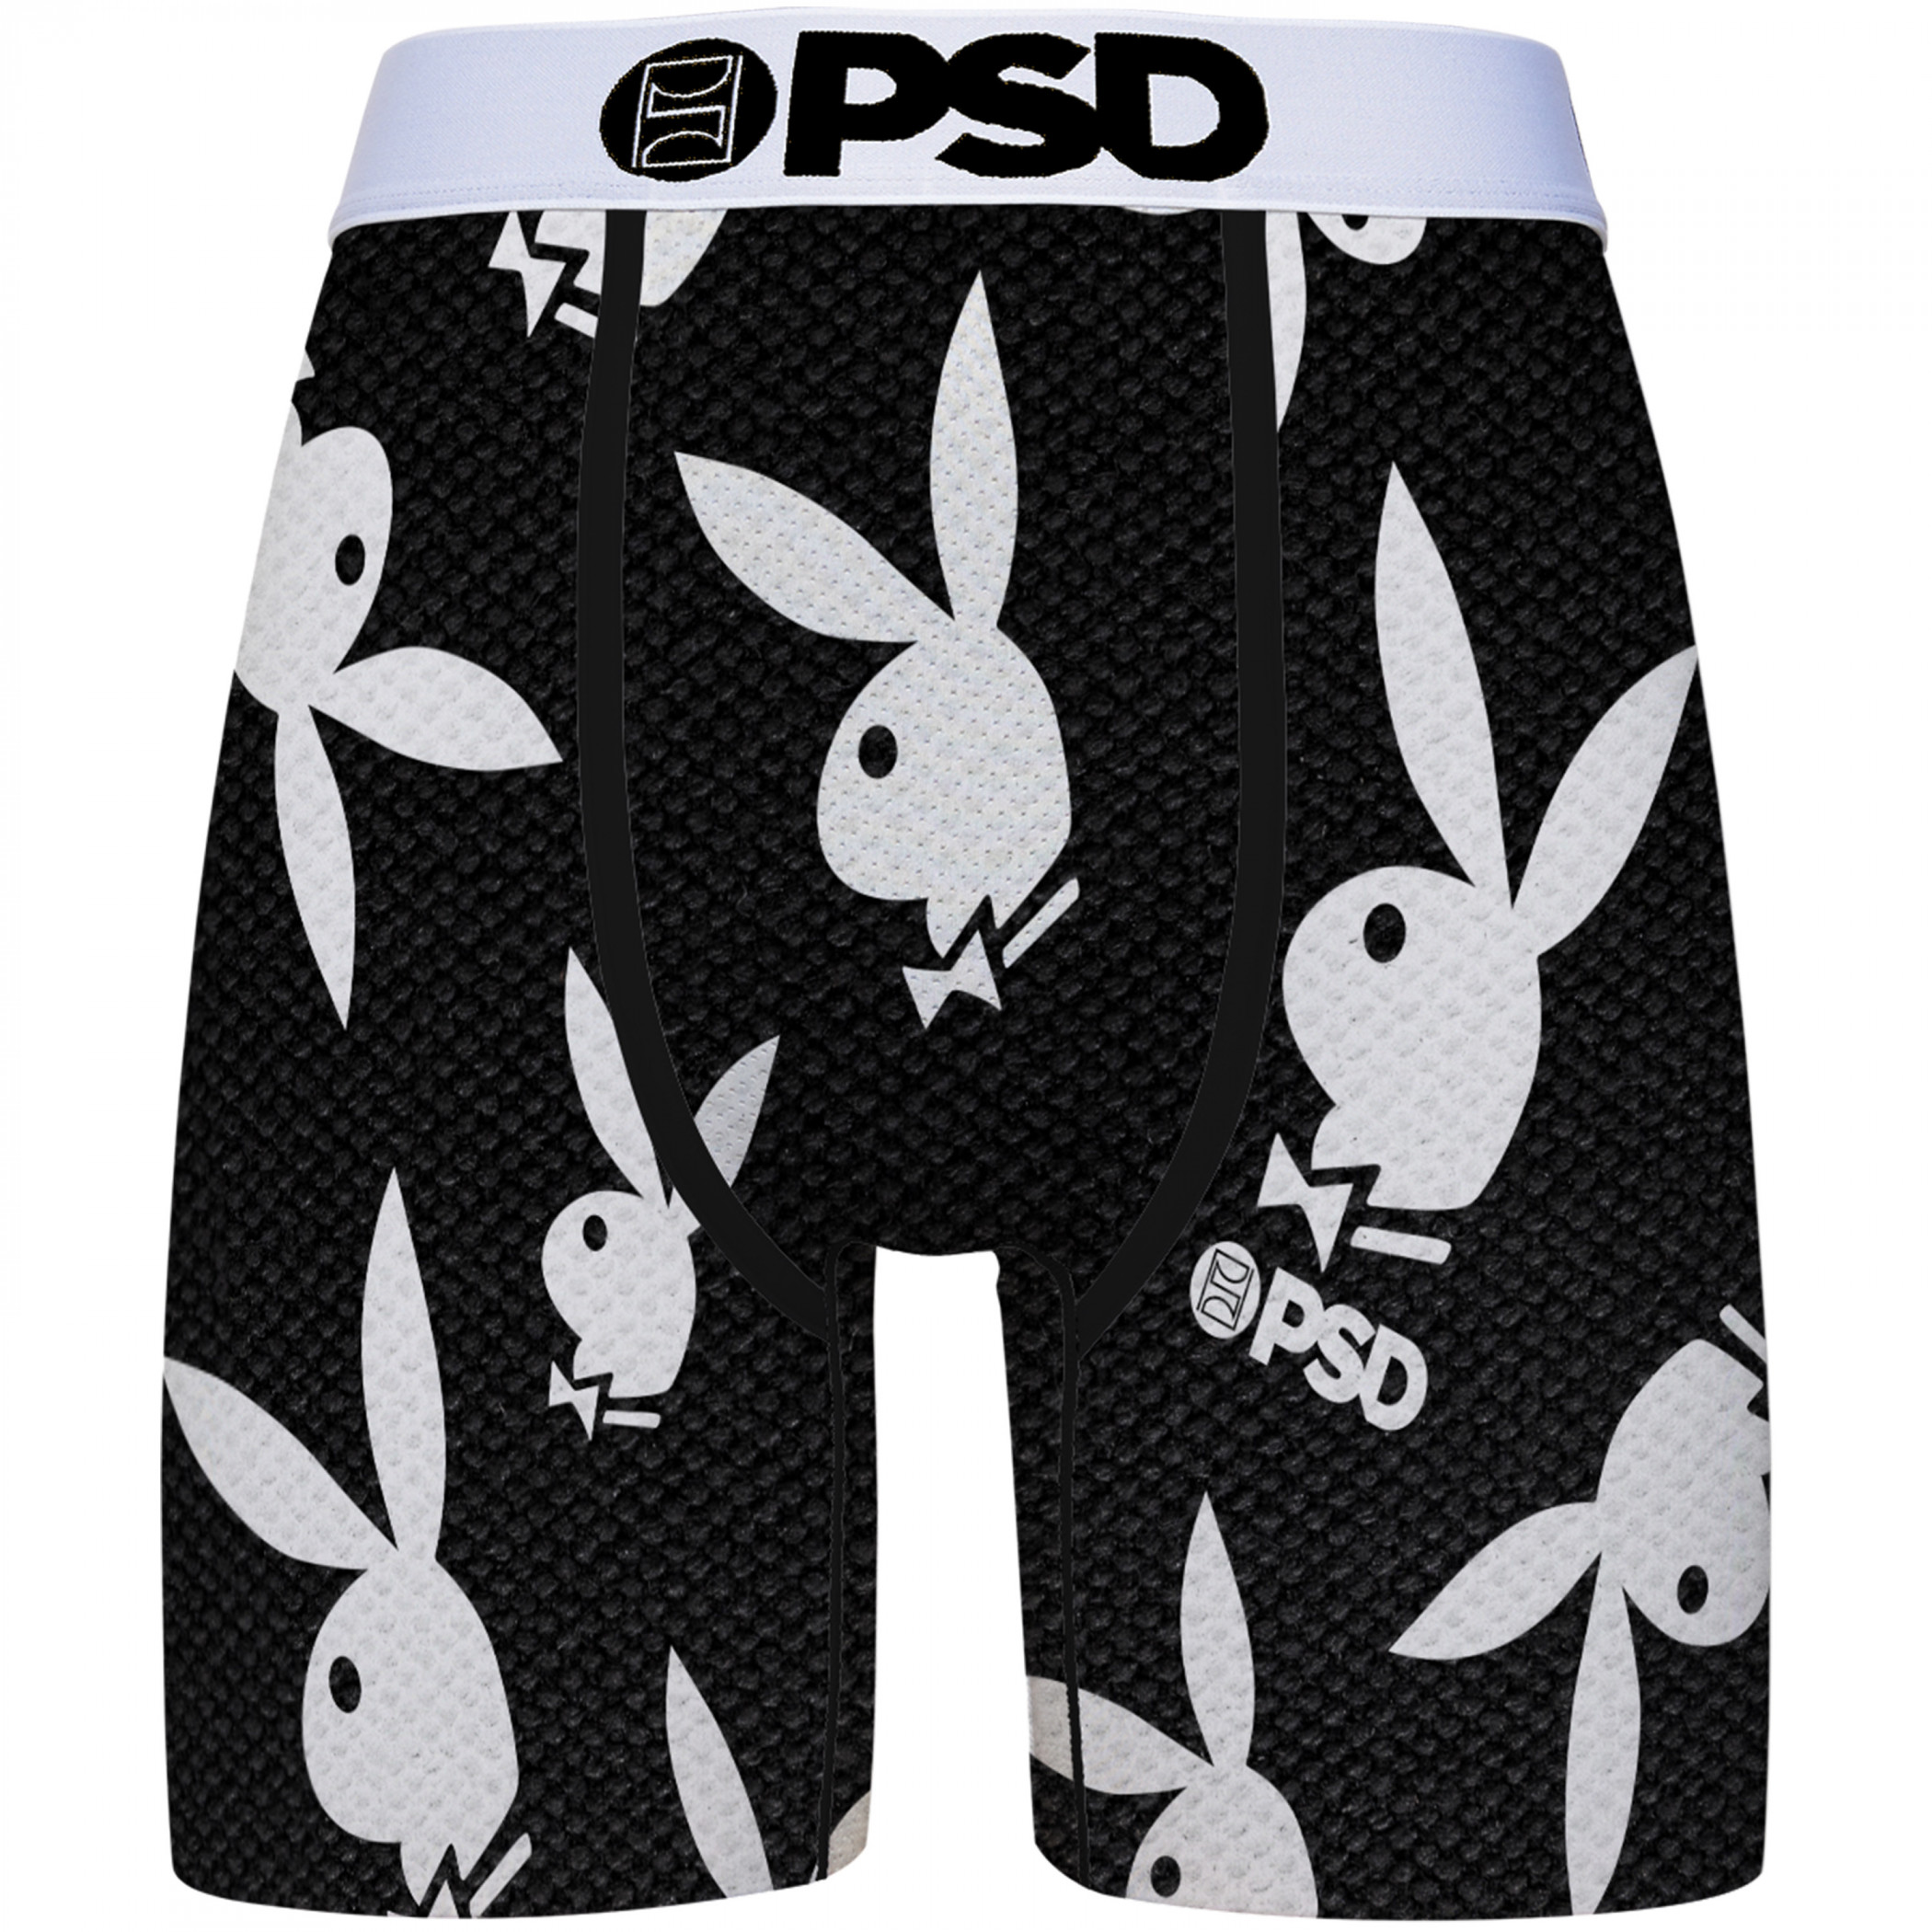 Playboy Logos 3-Pairs PSD Boxer Briefs